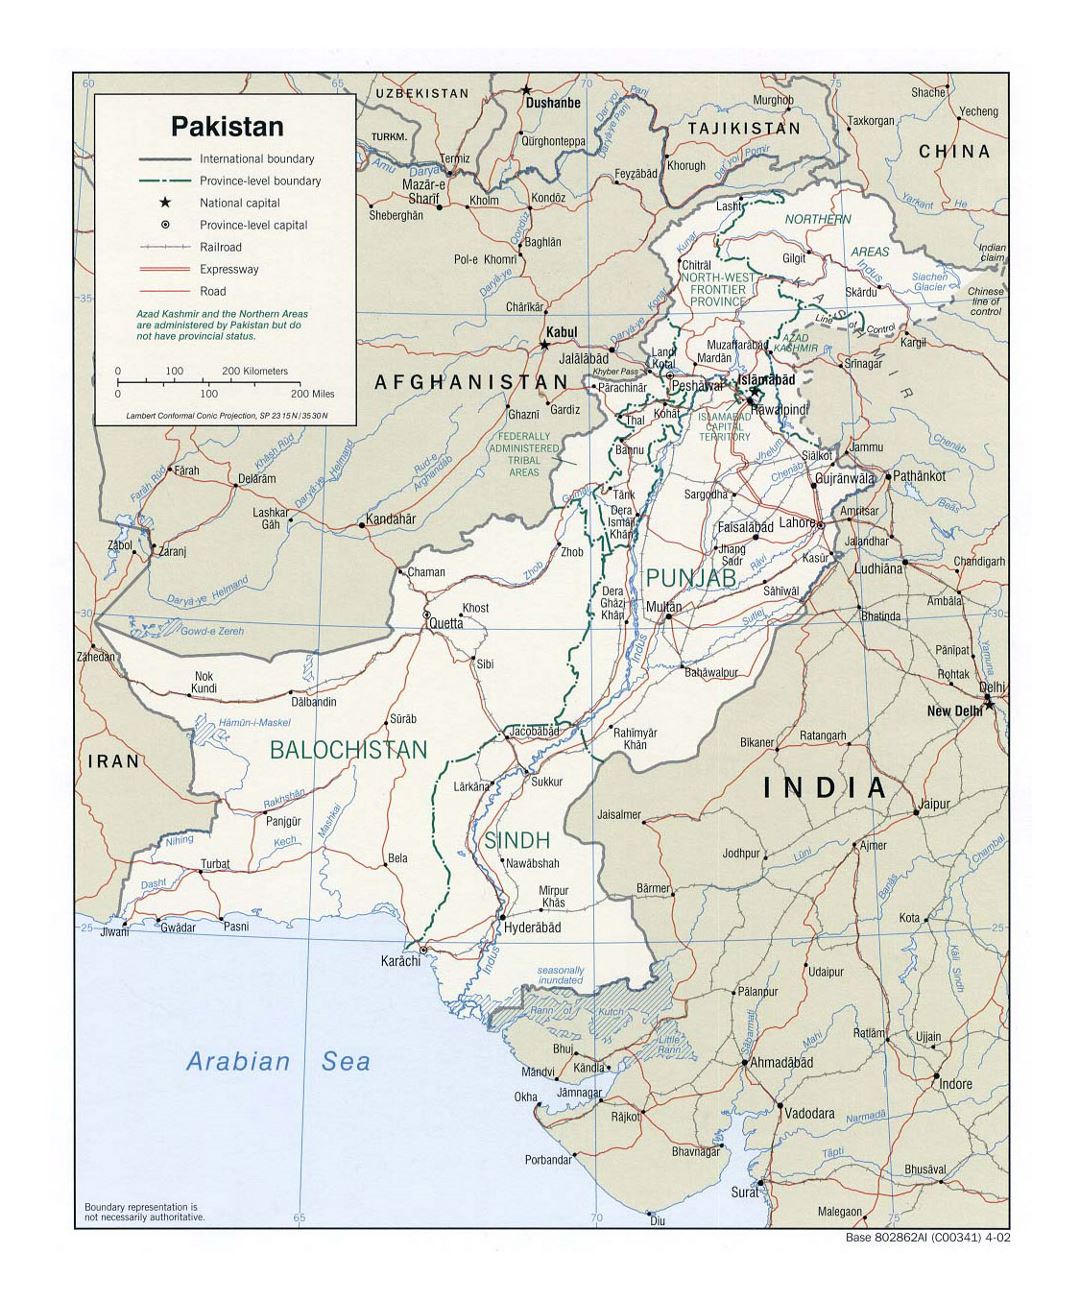 Detallado mapa político y administrativo de Pakistán con carreteras, ferrocarriles y principales ciudades - 2002